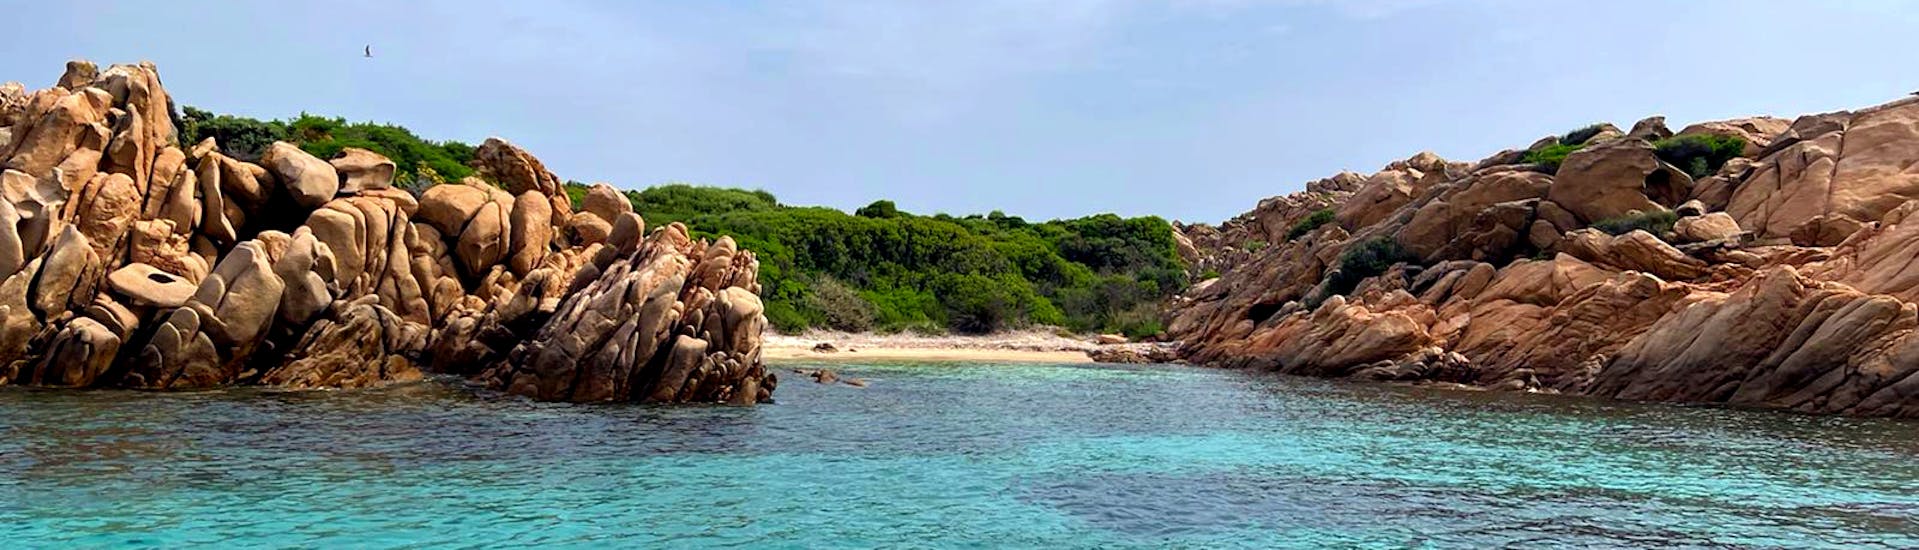 Blick auf einen Strand, den Ihr während der RIB-Bootstour zur Insel Mortorio und Romazzino mit Blue Deep Tours Golfo Aranci sehen werdet.